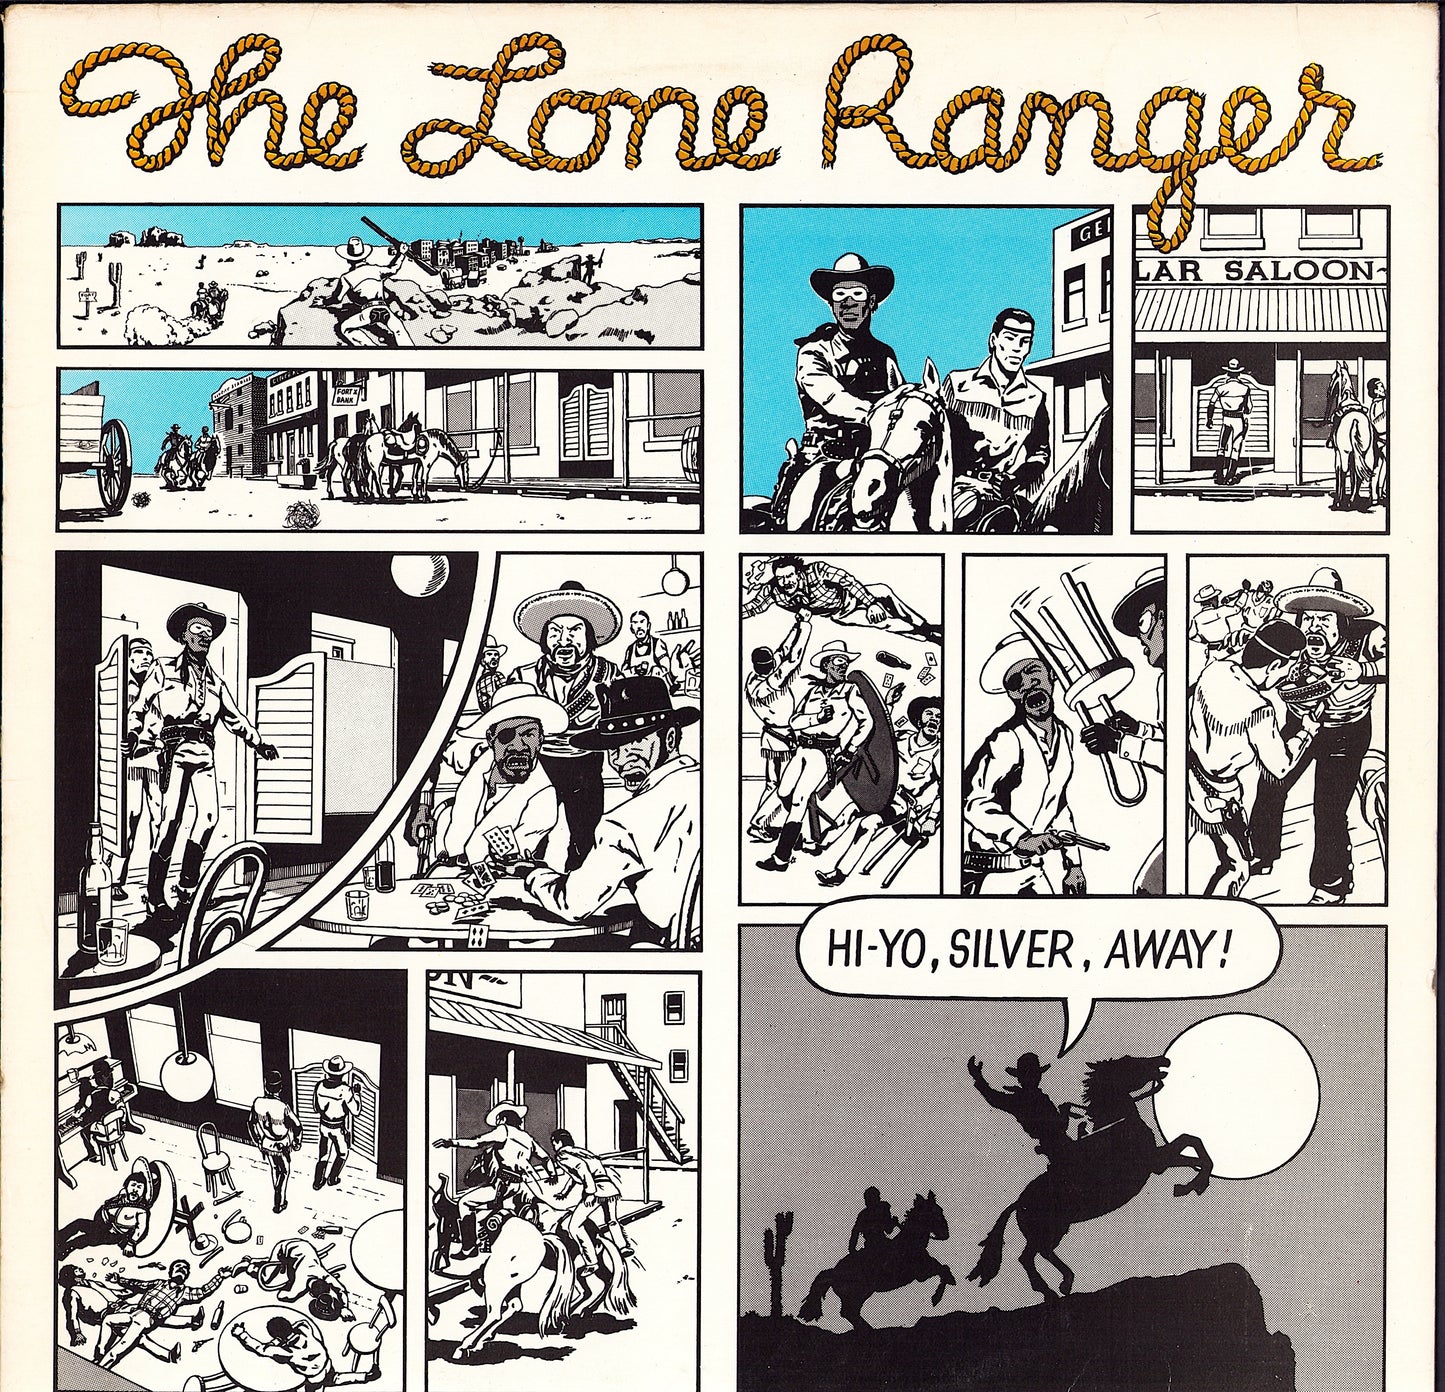 The Lone Ranger - Hi-Yo, Silver, Away! (Vinyl LP)